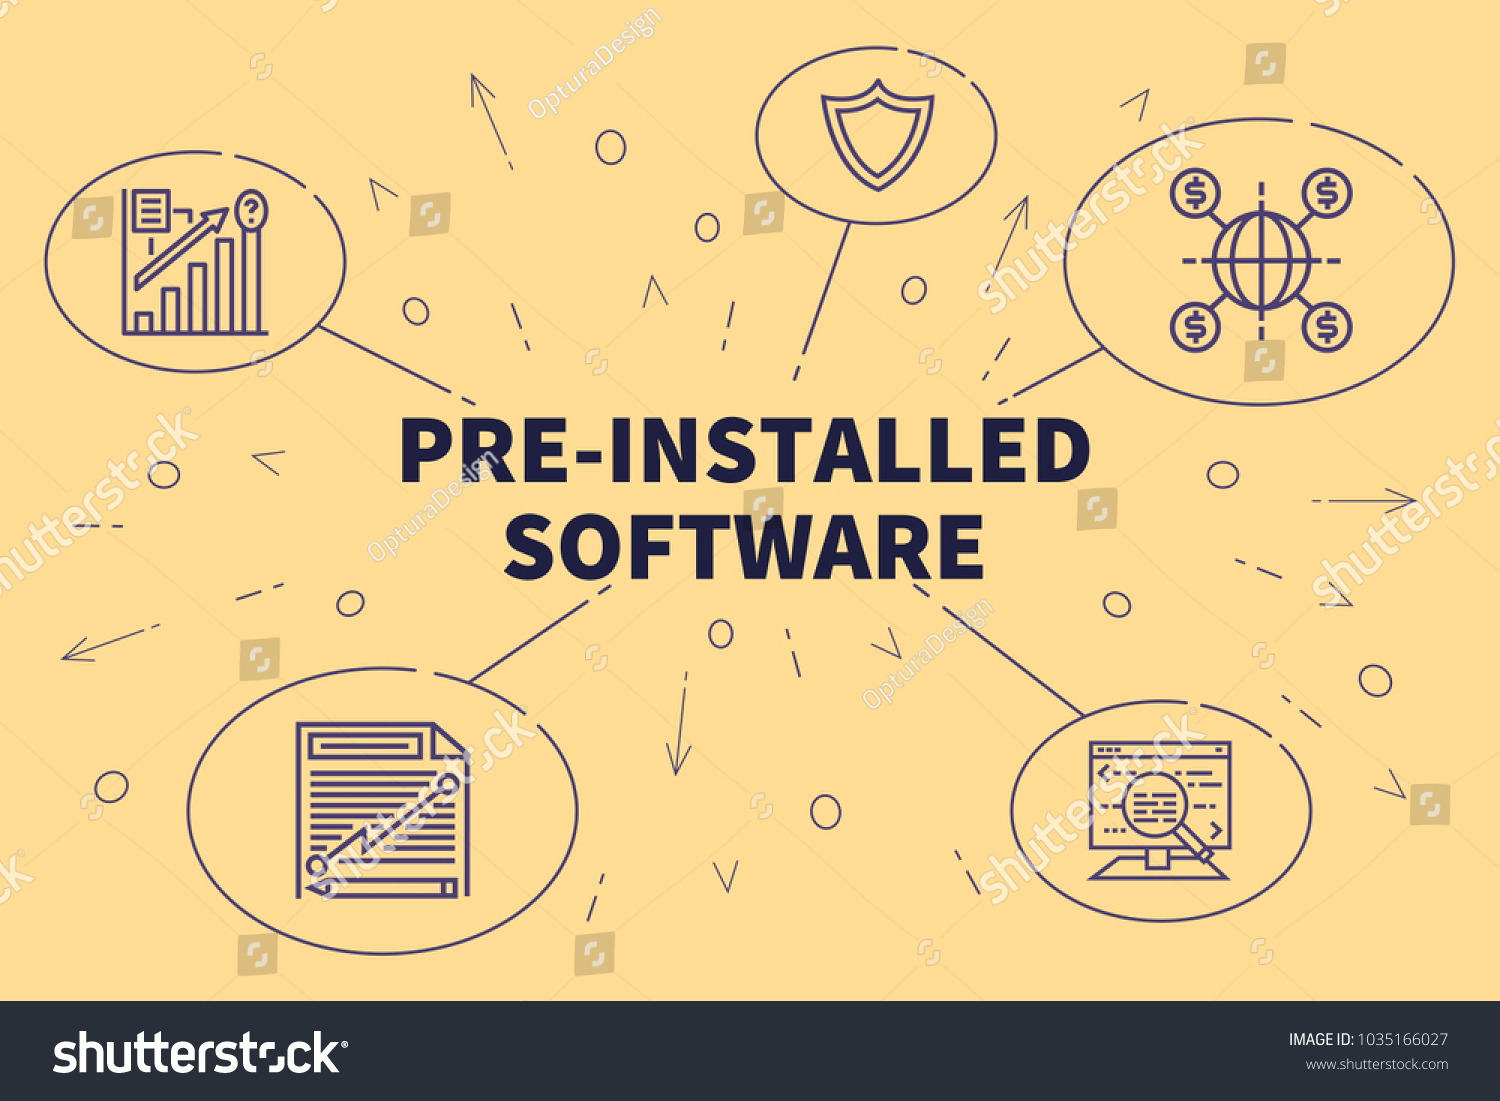 Preinstalled software